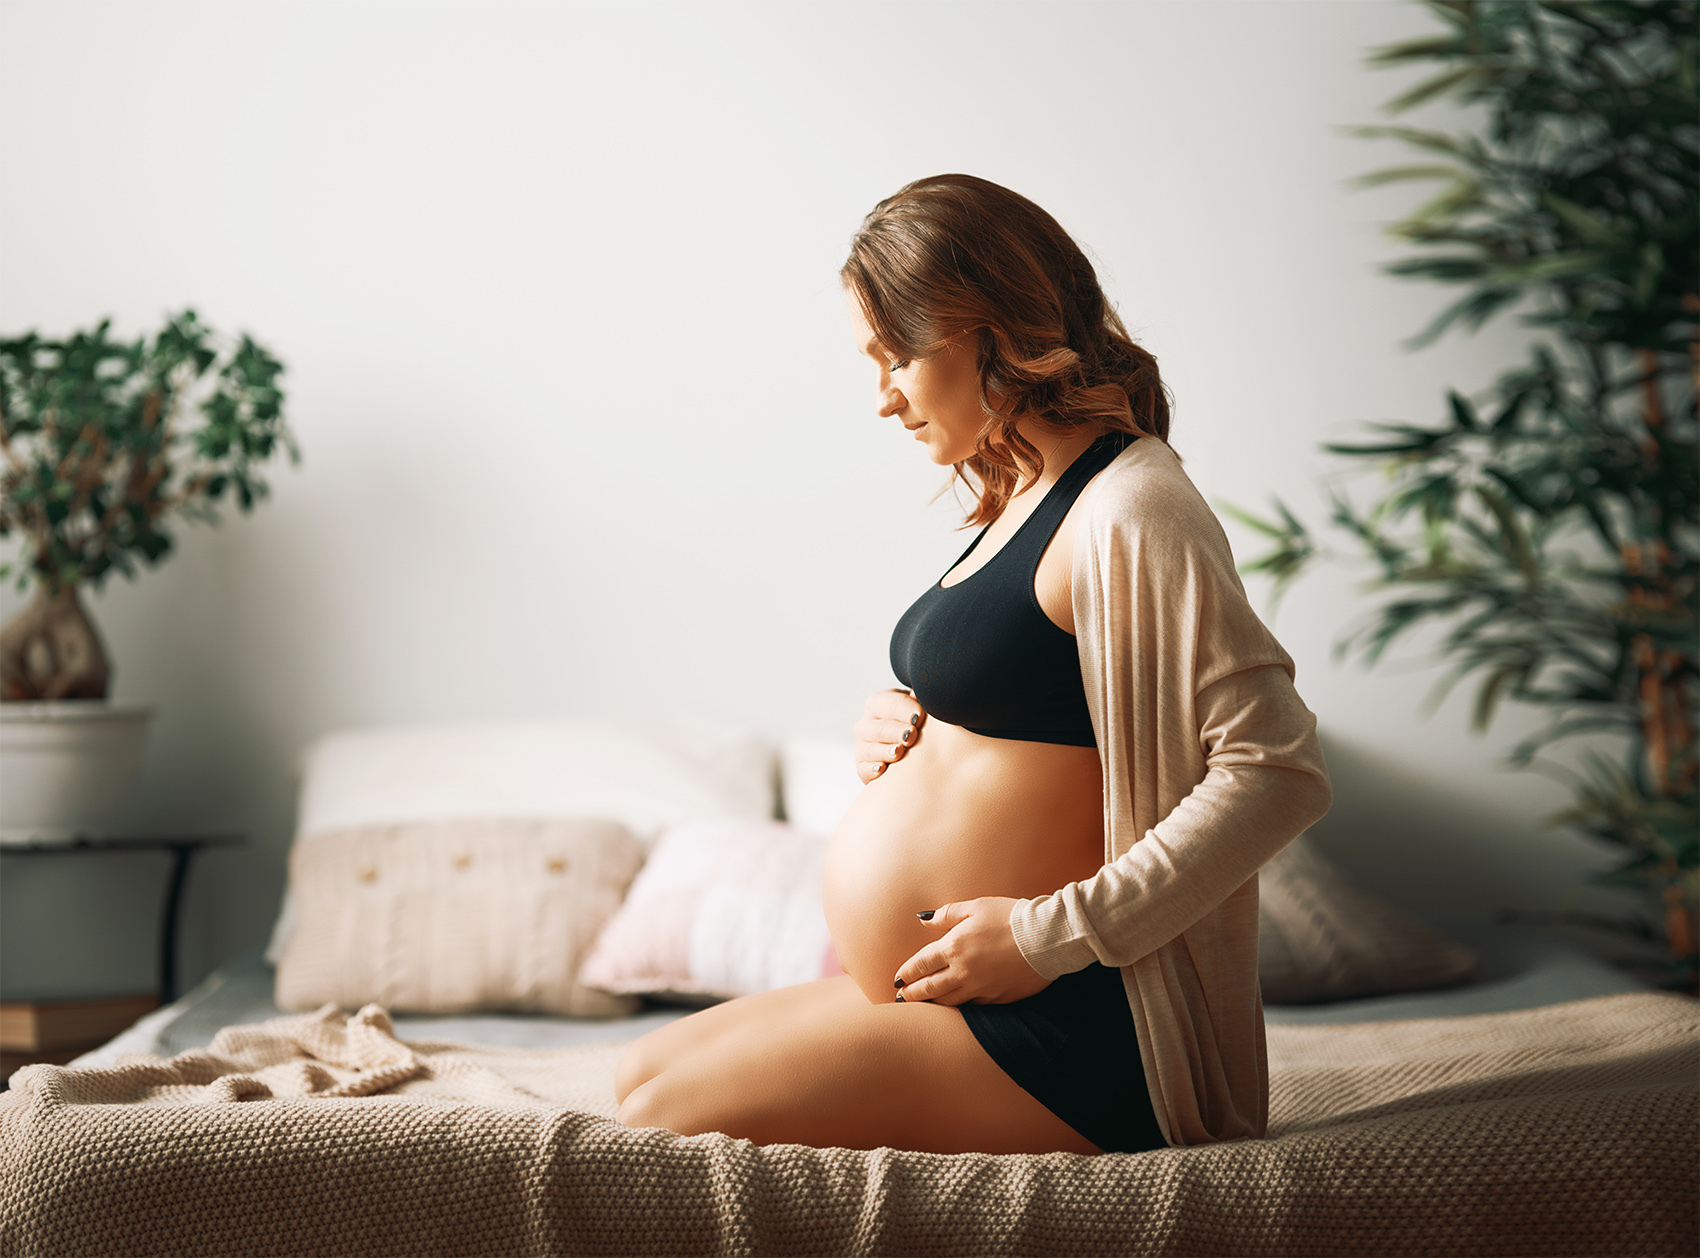 Profilaktyka w ciąży to podstawa zdrowia mamy i dziecka! O czym powinnaś pamiętać?